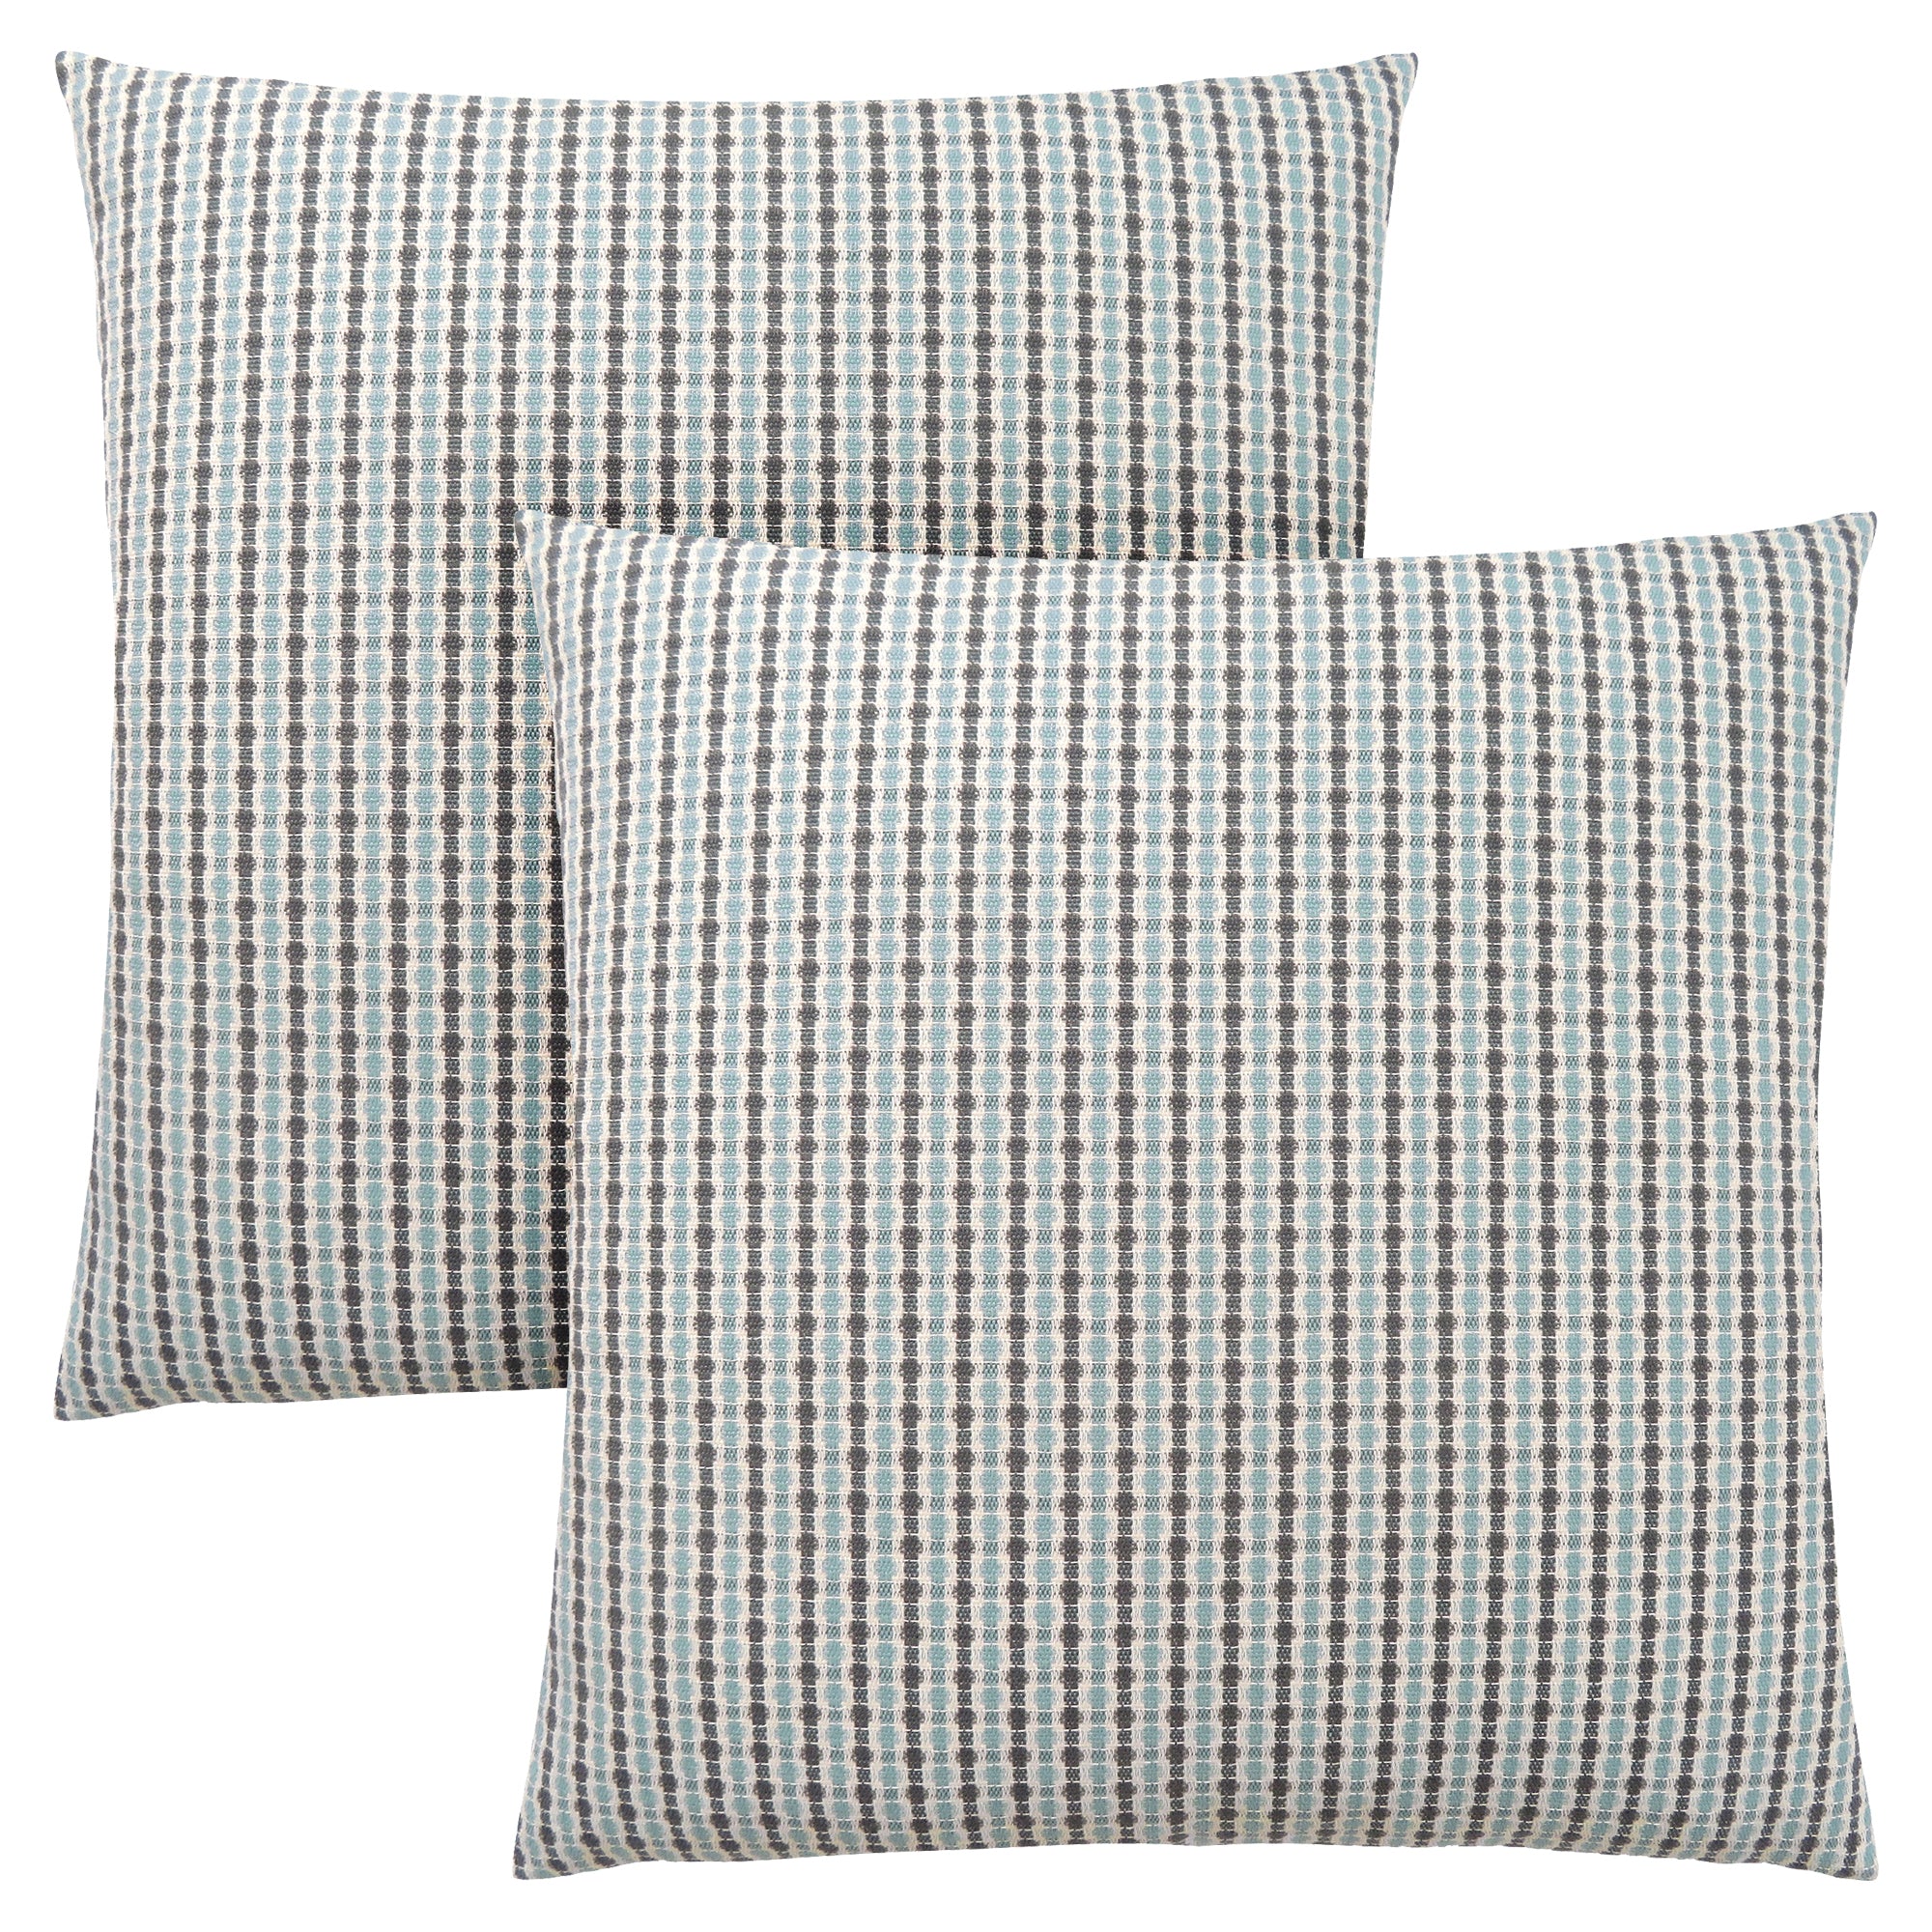 Pillow - 18X 18 / Light Blue / Grey Abstract Dot / 2Pcs